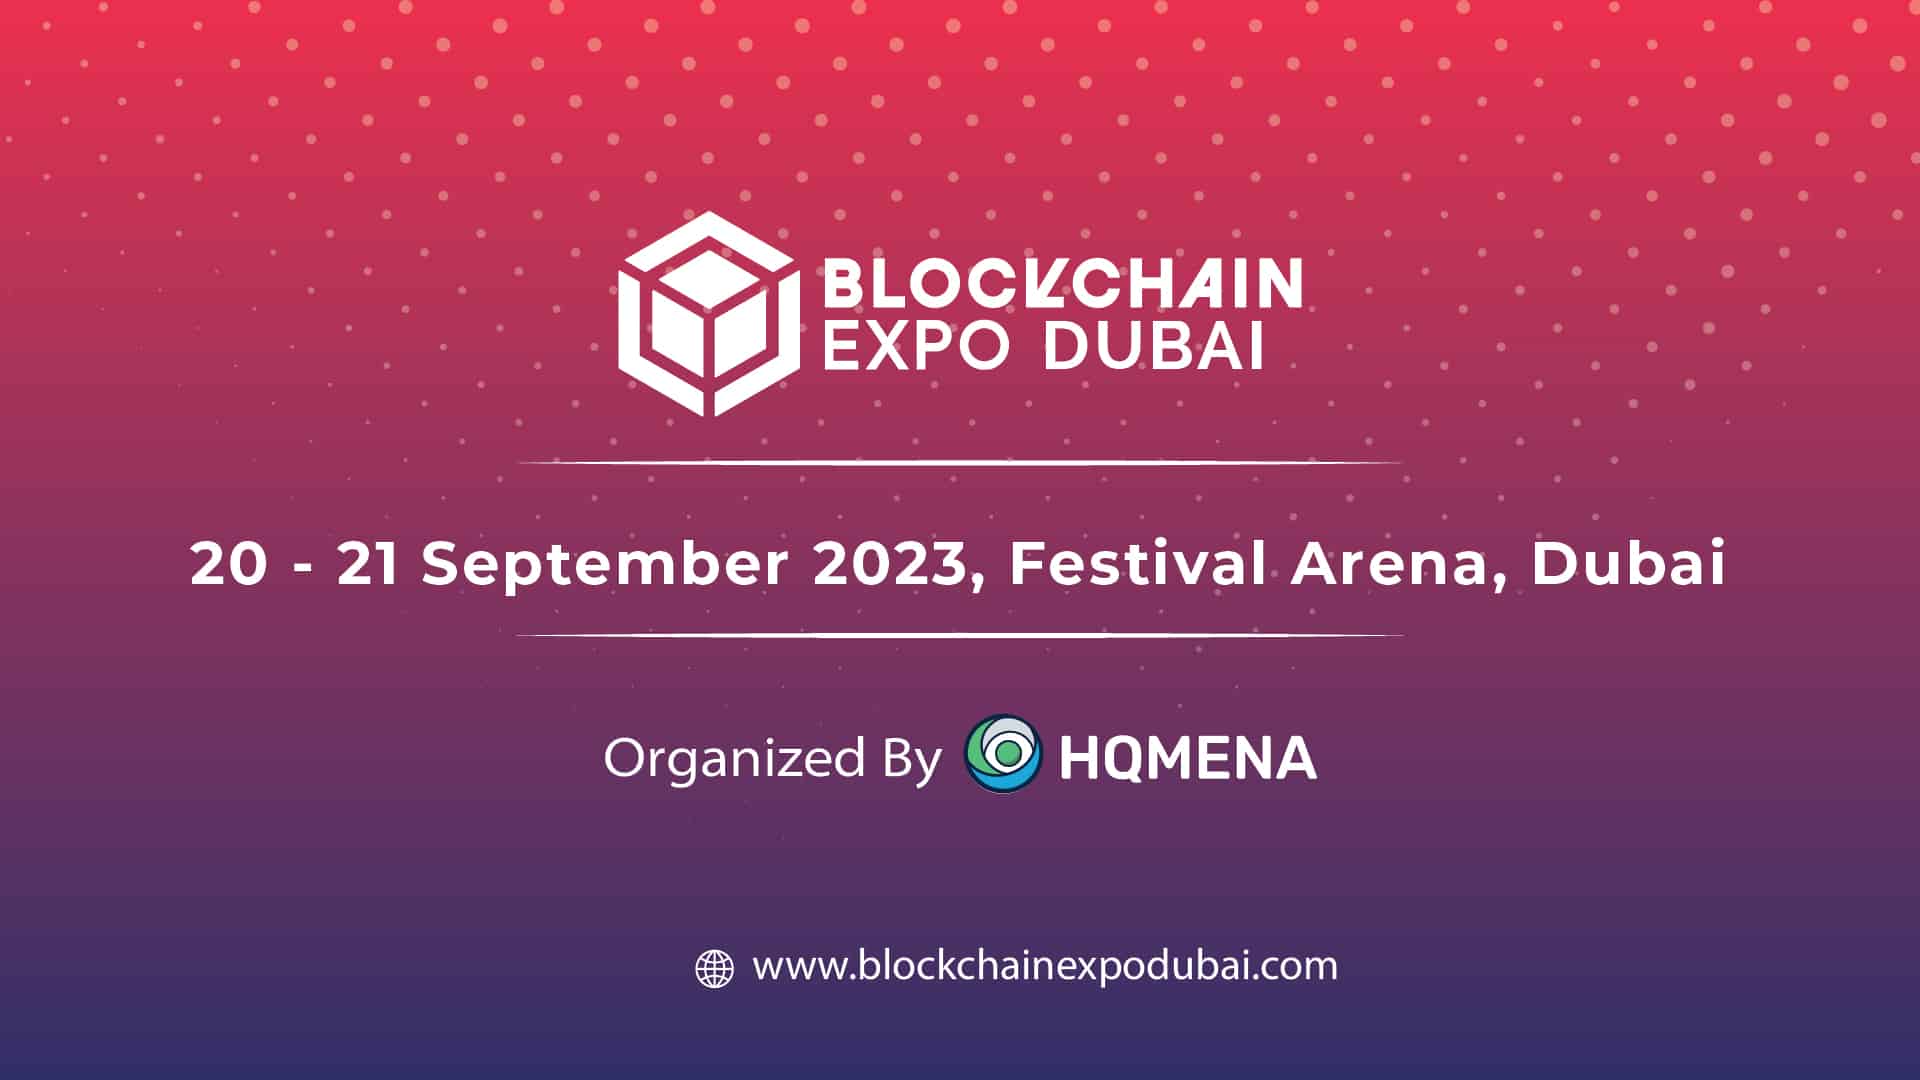 HQ MENA نمایشگاه Blockchain Dubai 2023، رویداد برتر بلاک چین در خاورمیانه را اعلام کرد.